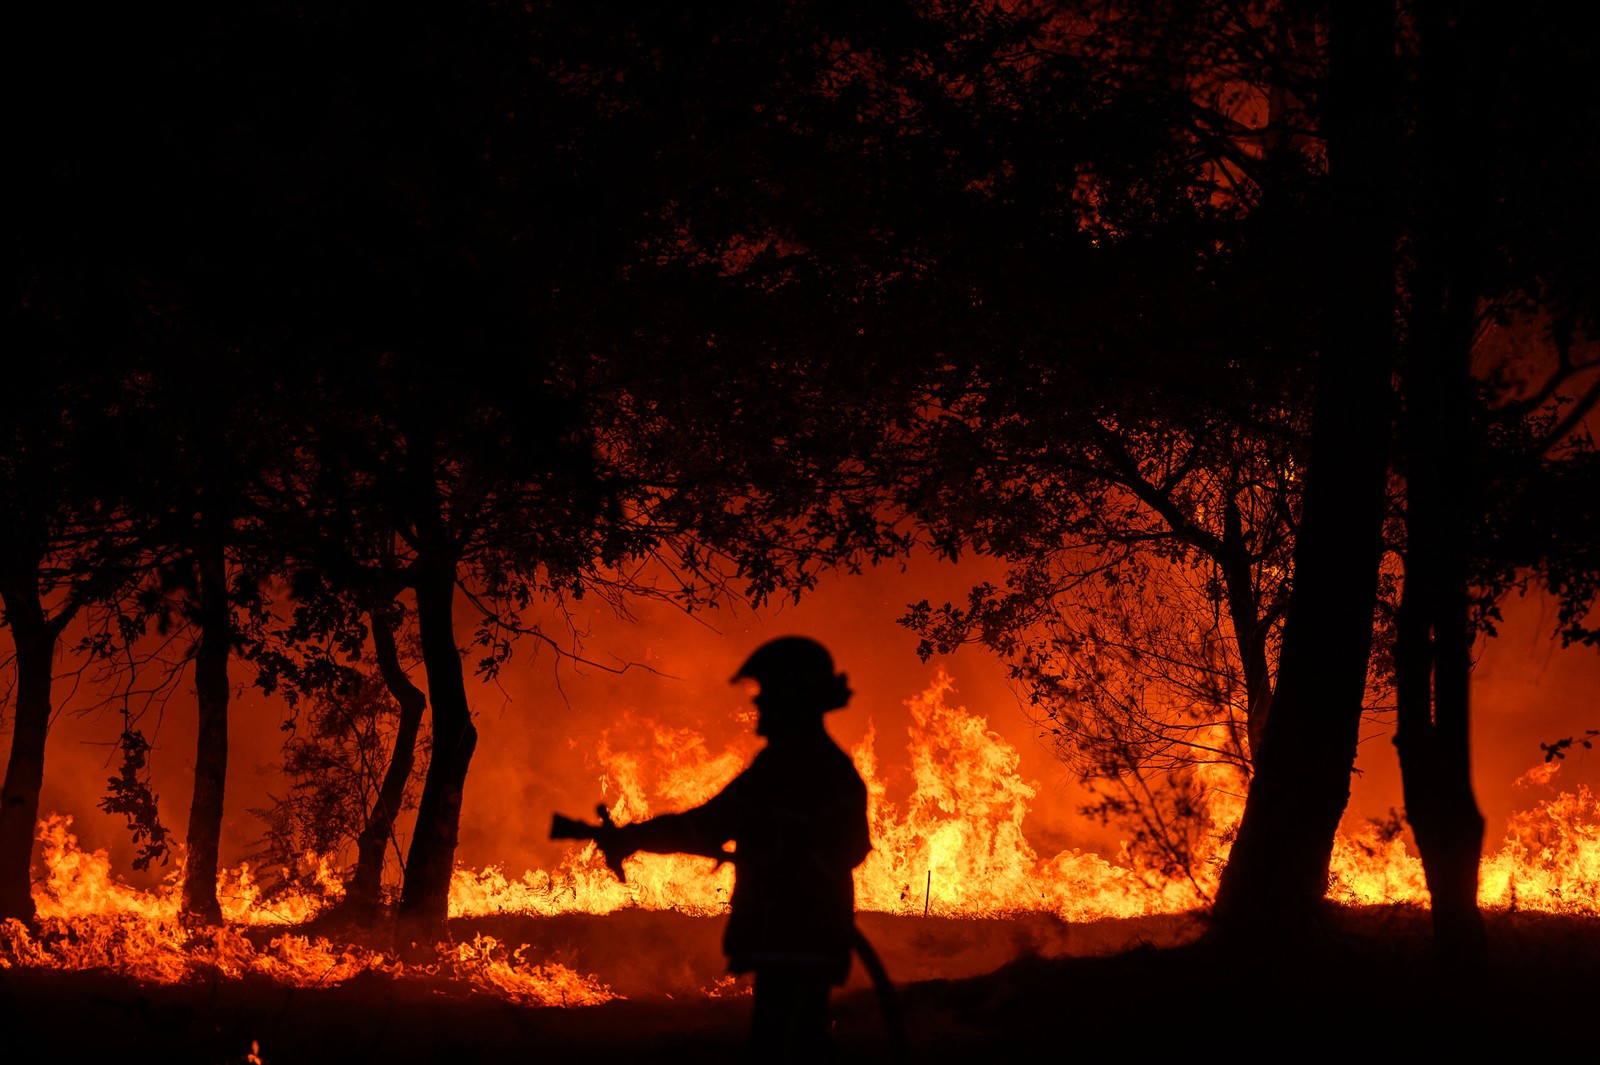 Bombeiro combate incêndio noturno em Saumos, perto de Bordeaux, sudoeste da França, onde moradores precisaram ser evacuados  — Foto: PHILIPPE LOPEZ / AFP